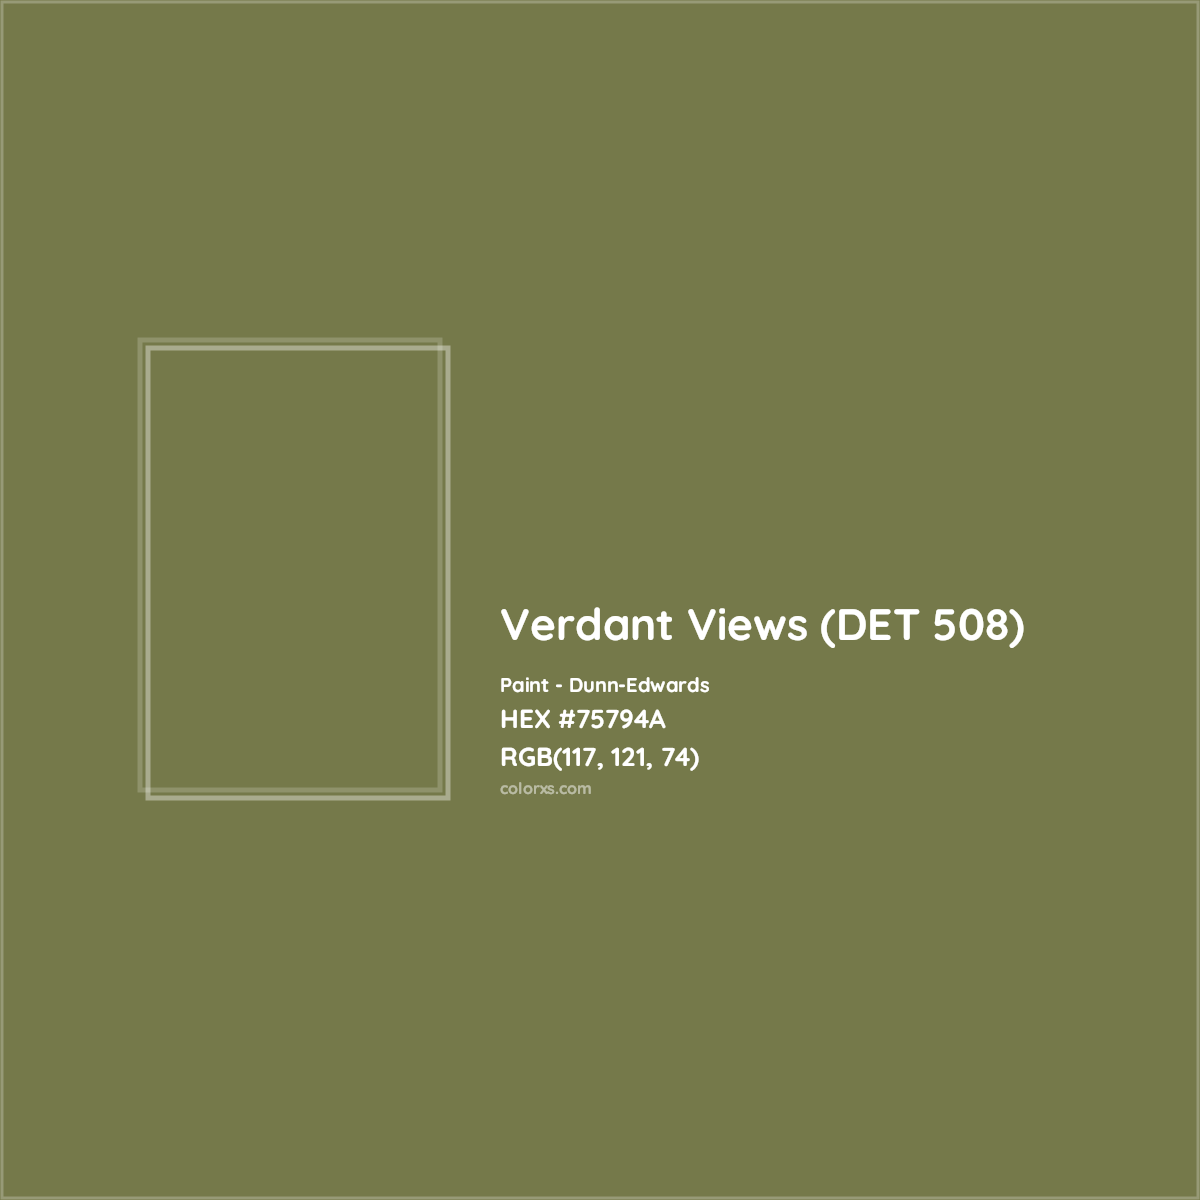 HEX #75794A Verdant Views (DET 508) Paint Dunn-Edwards - Color Code